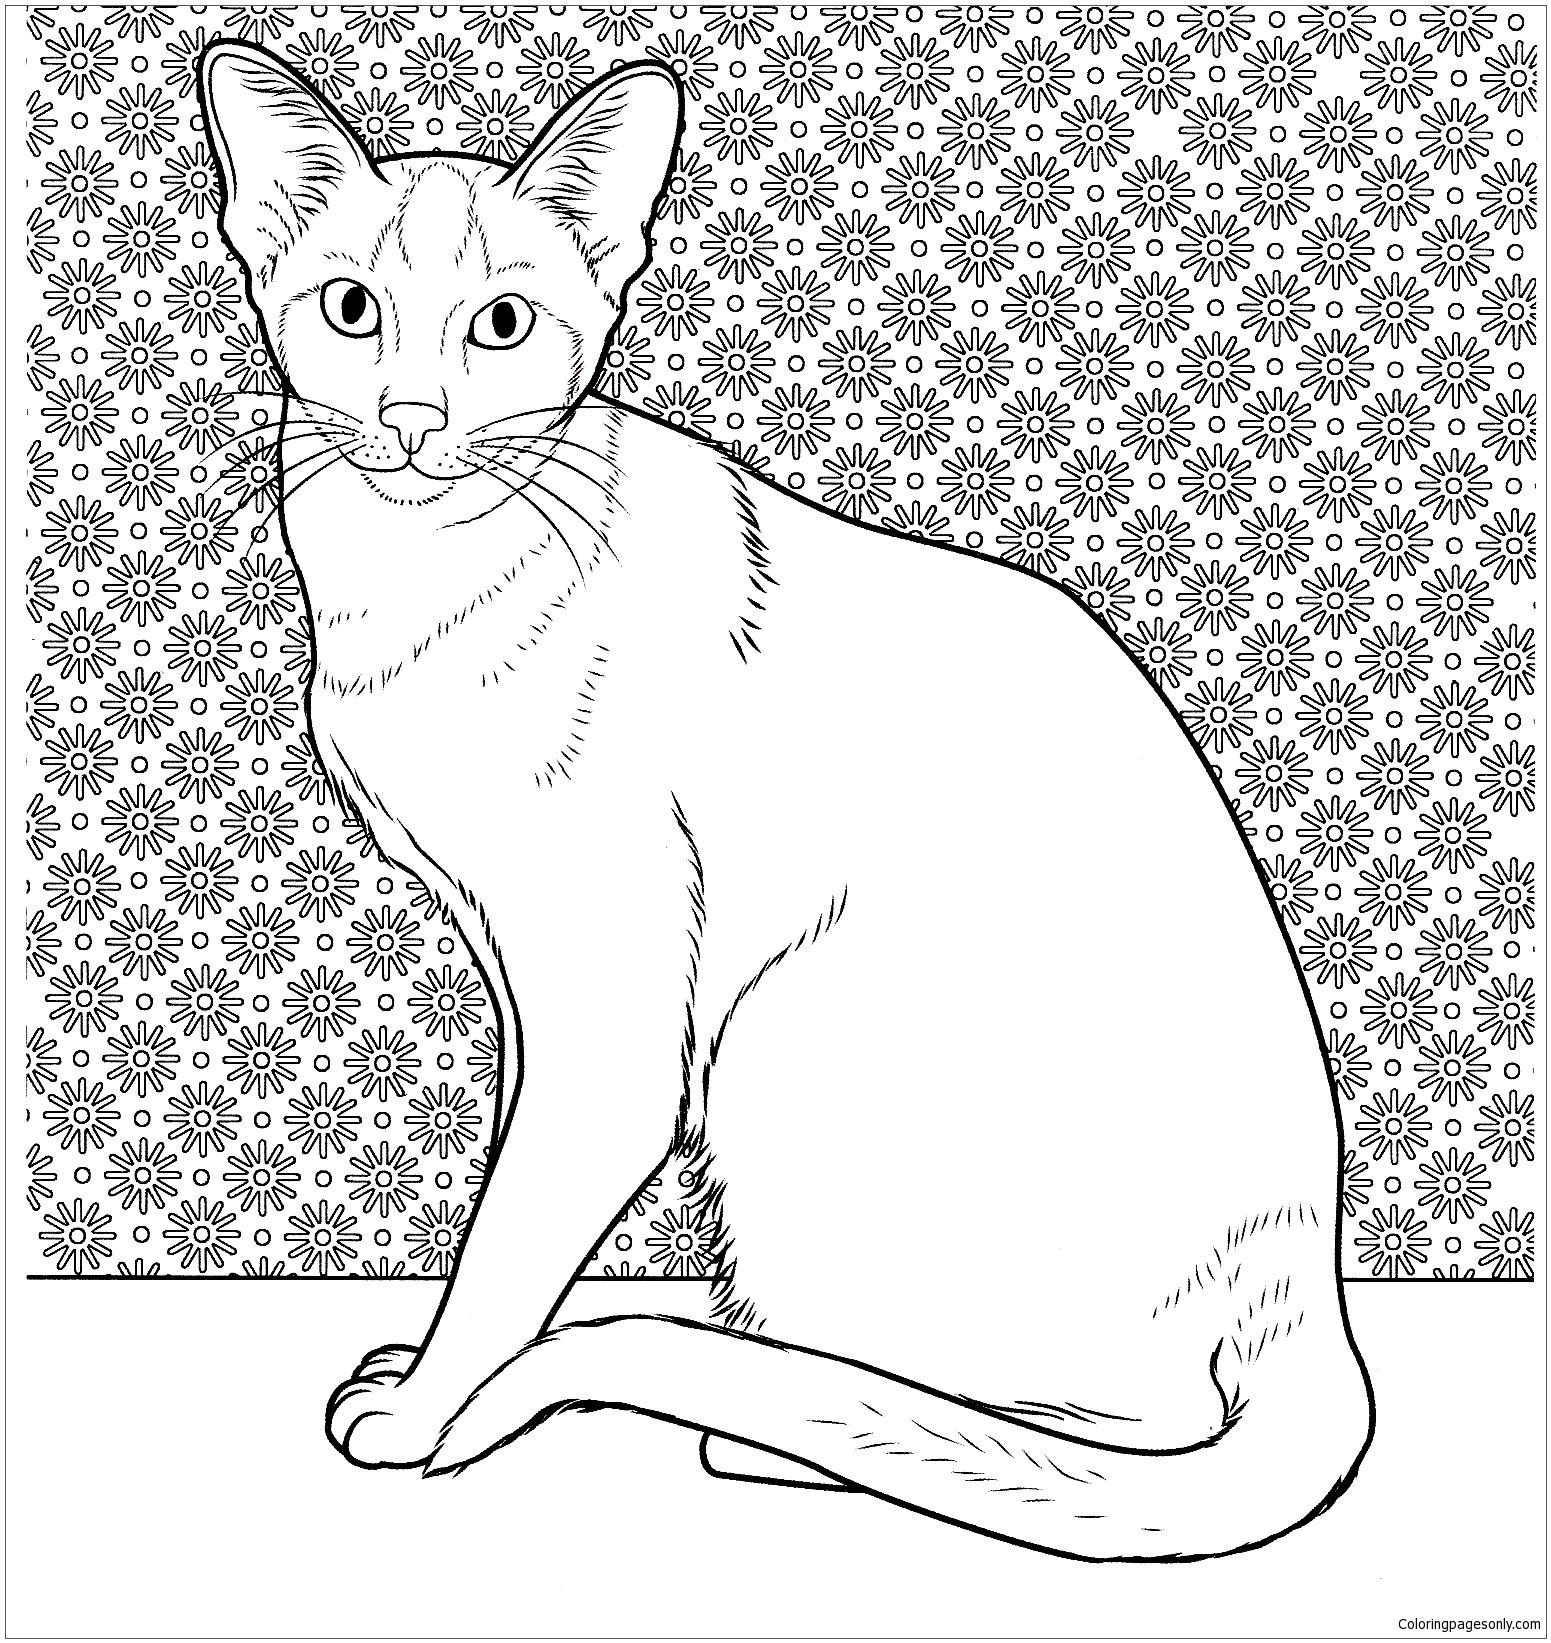 Gato Siamês Oriental from Gato